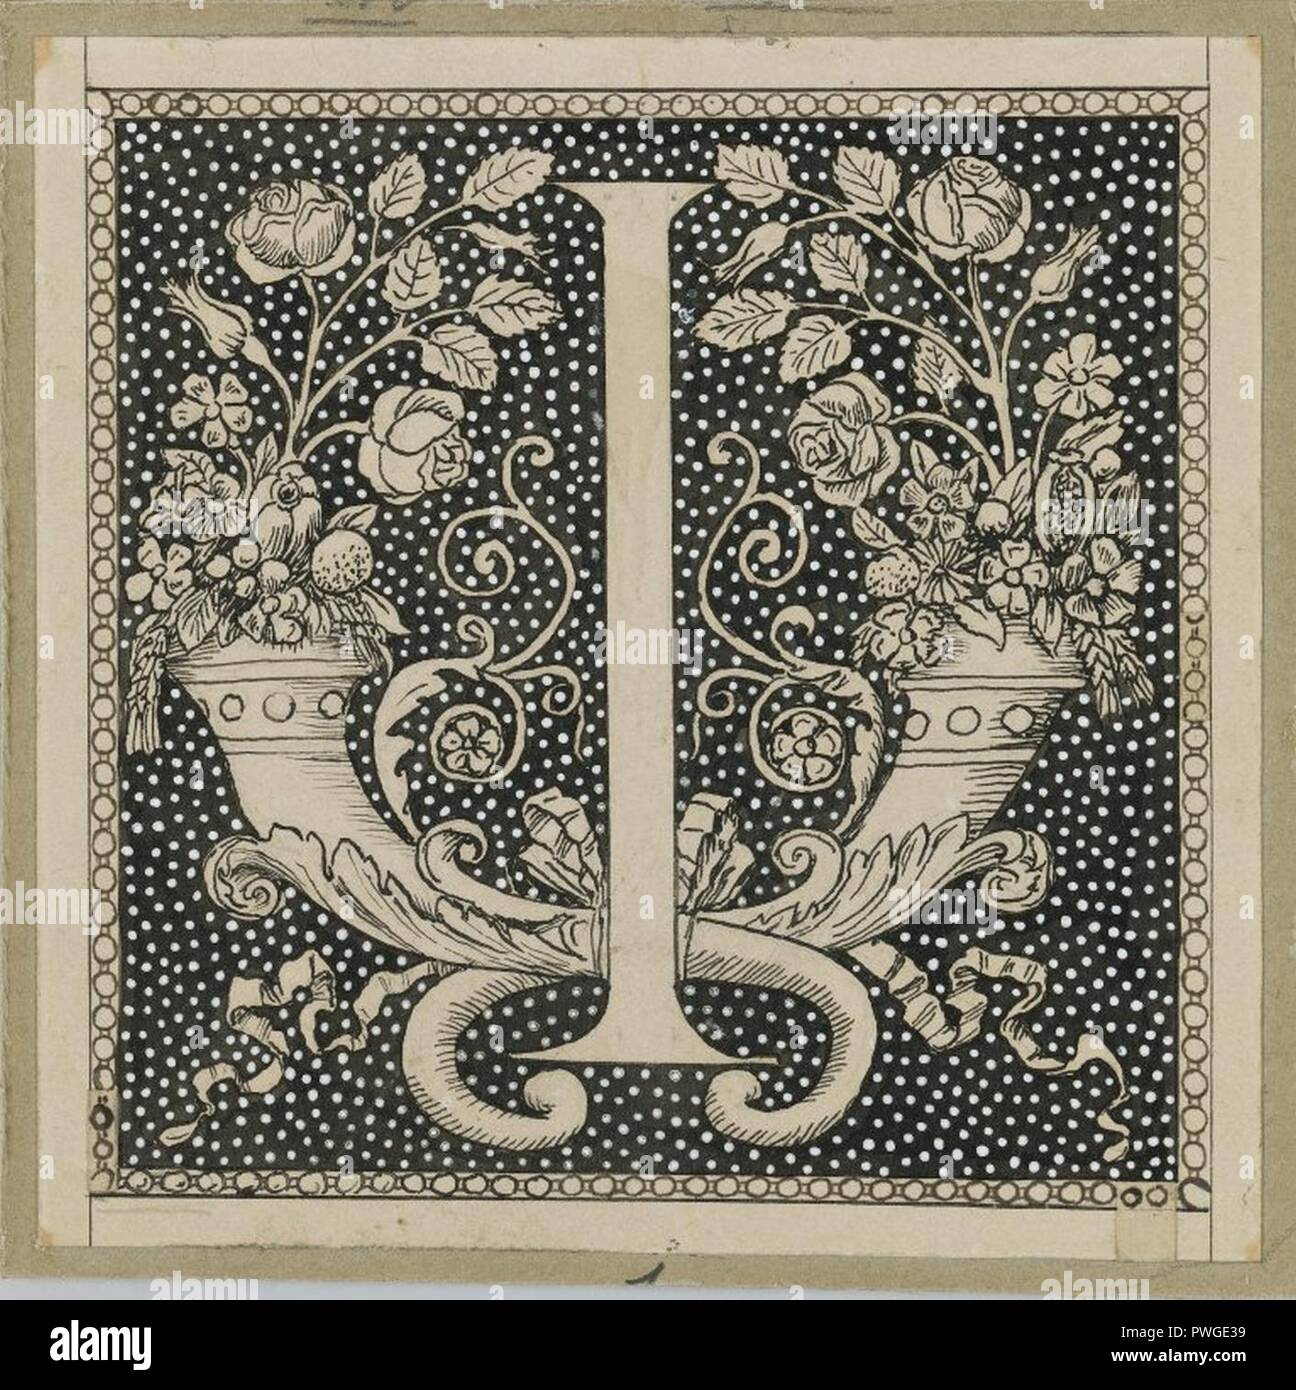 Letra mayúscula I - James Tissot. Foto de stock